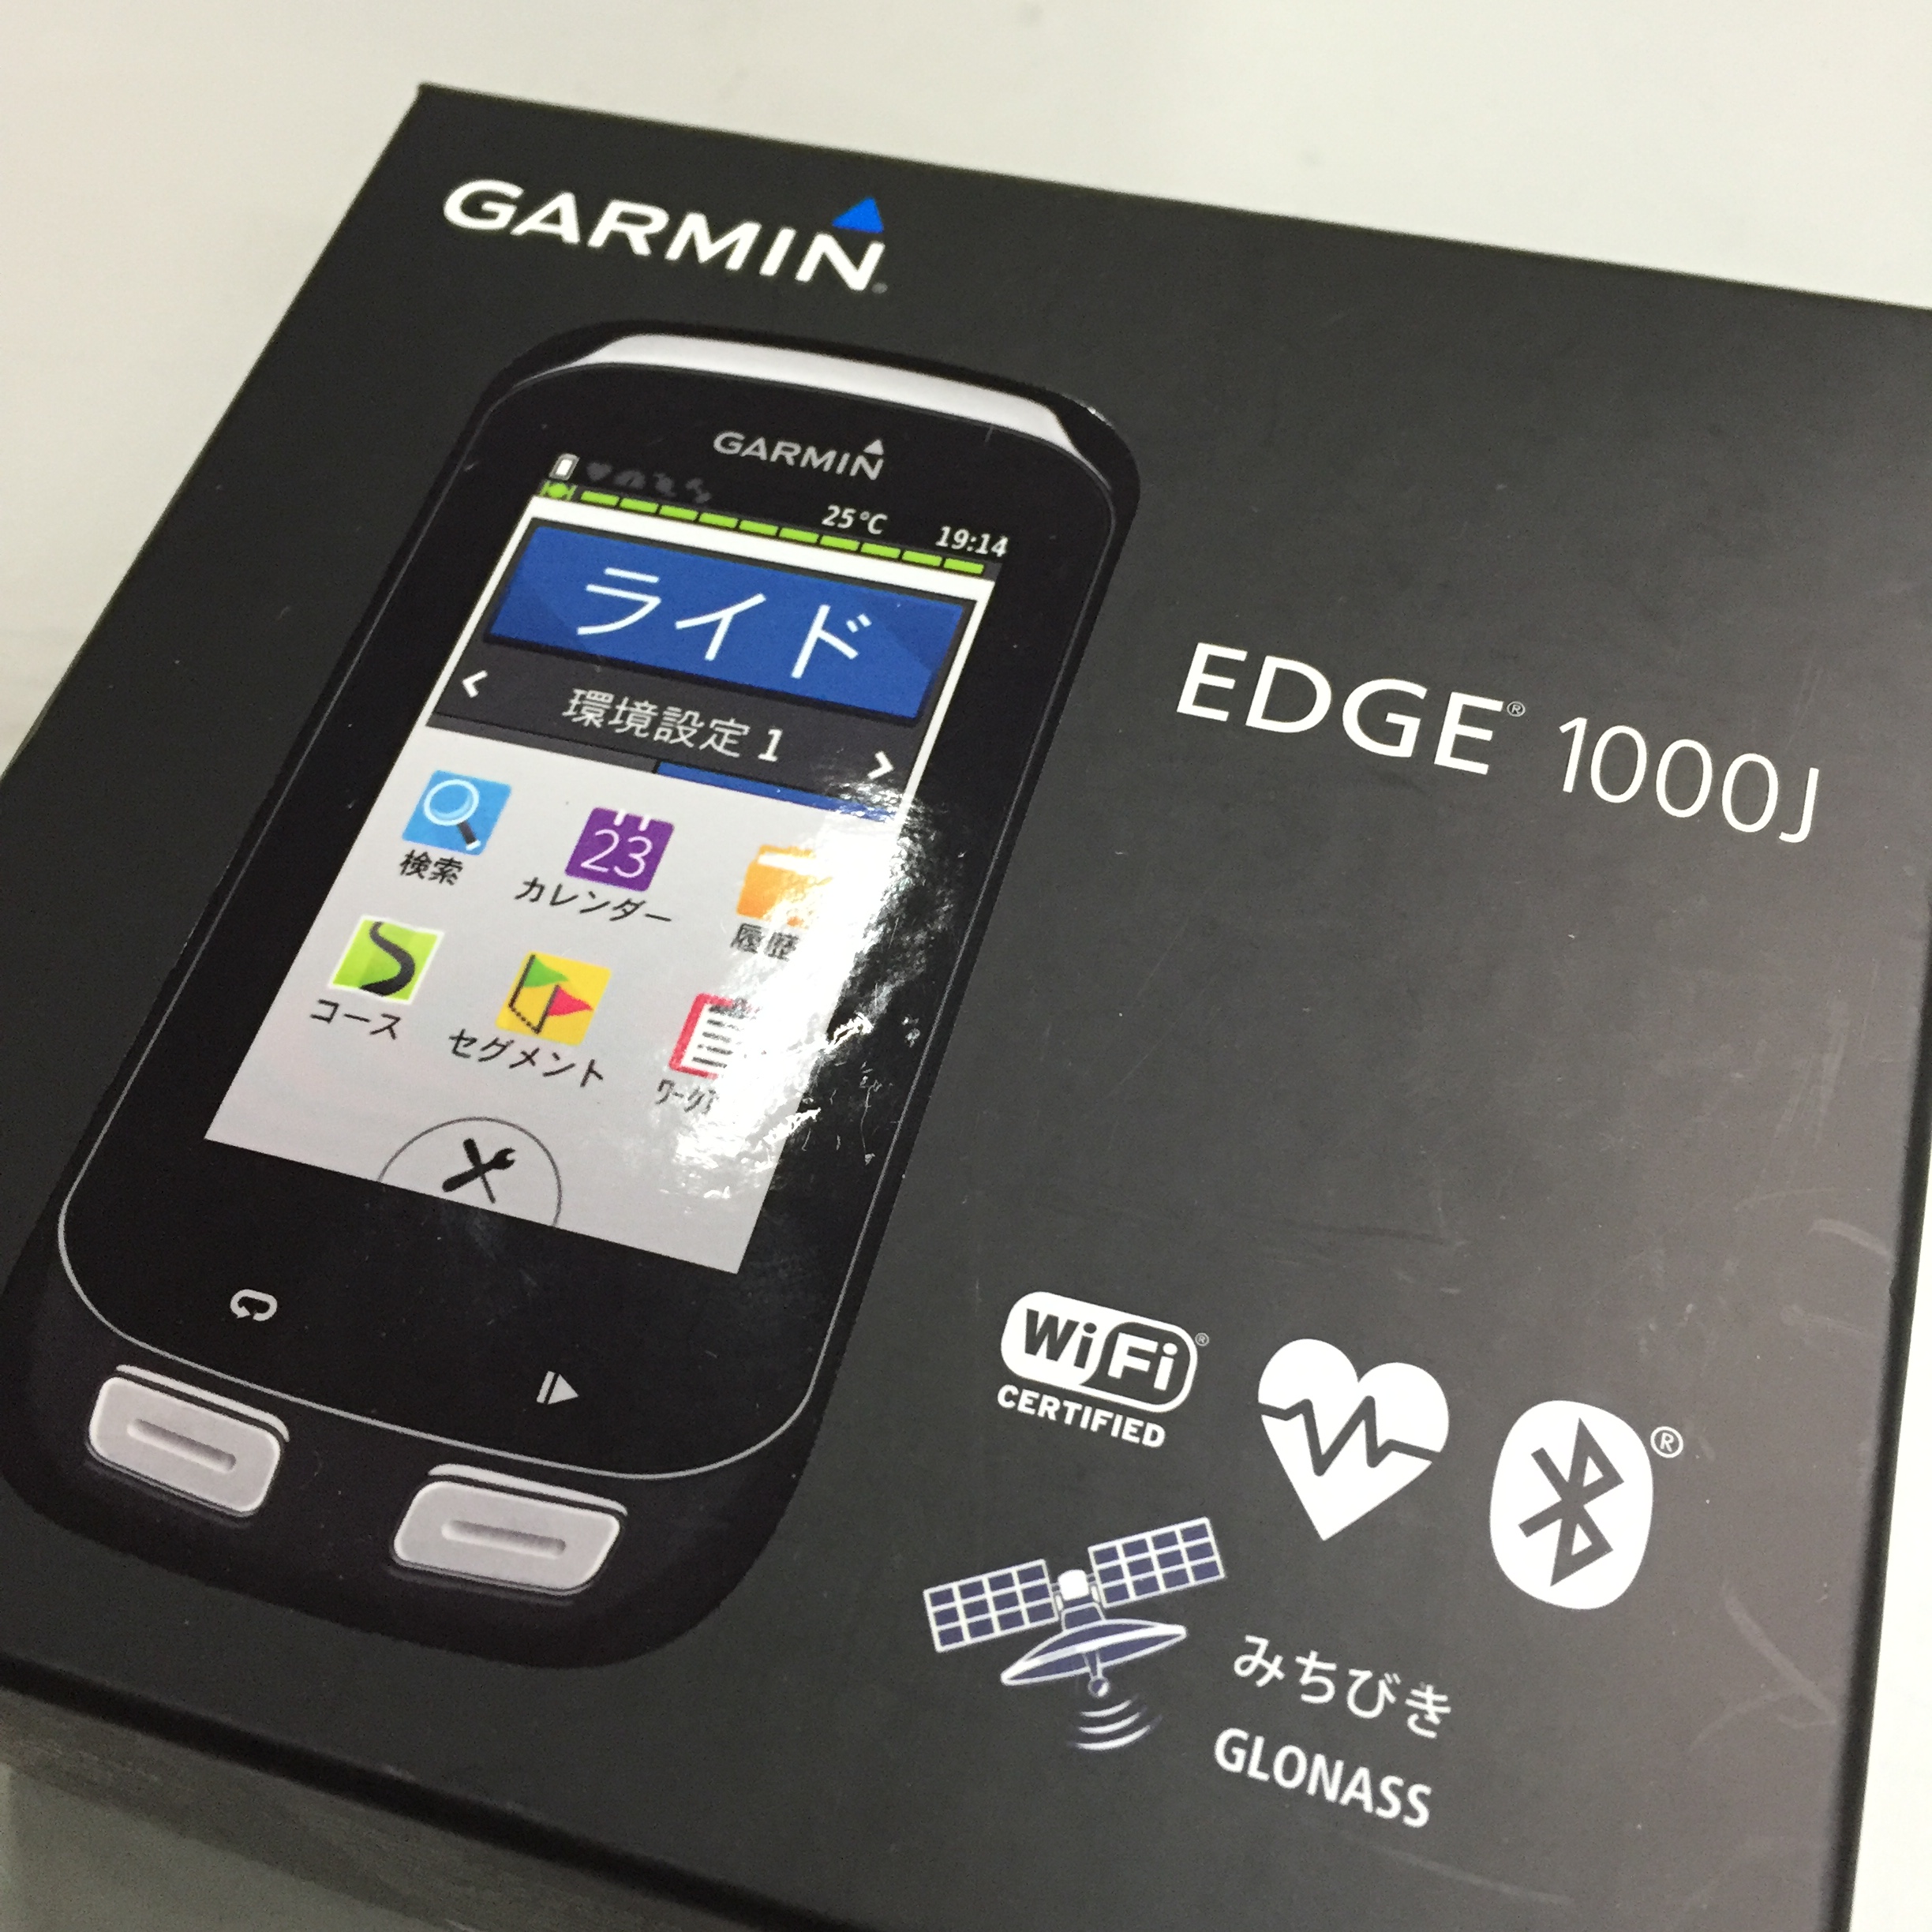 日本語対応のサイコンですガーミン GARMIN EDGE1000J